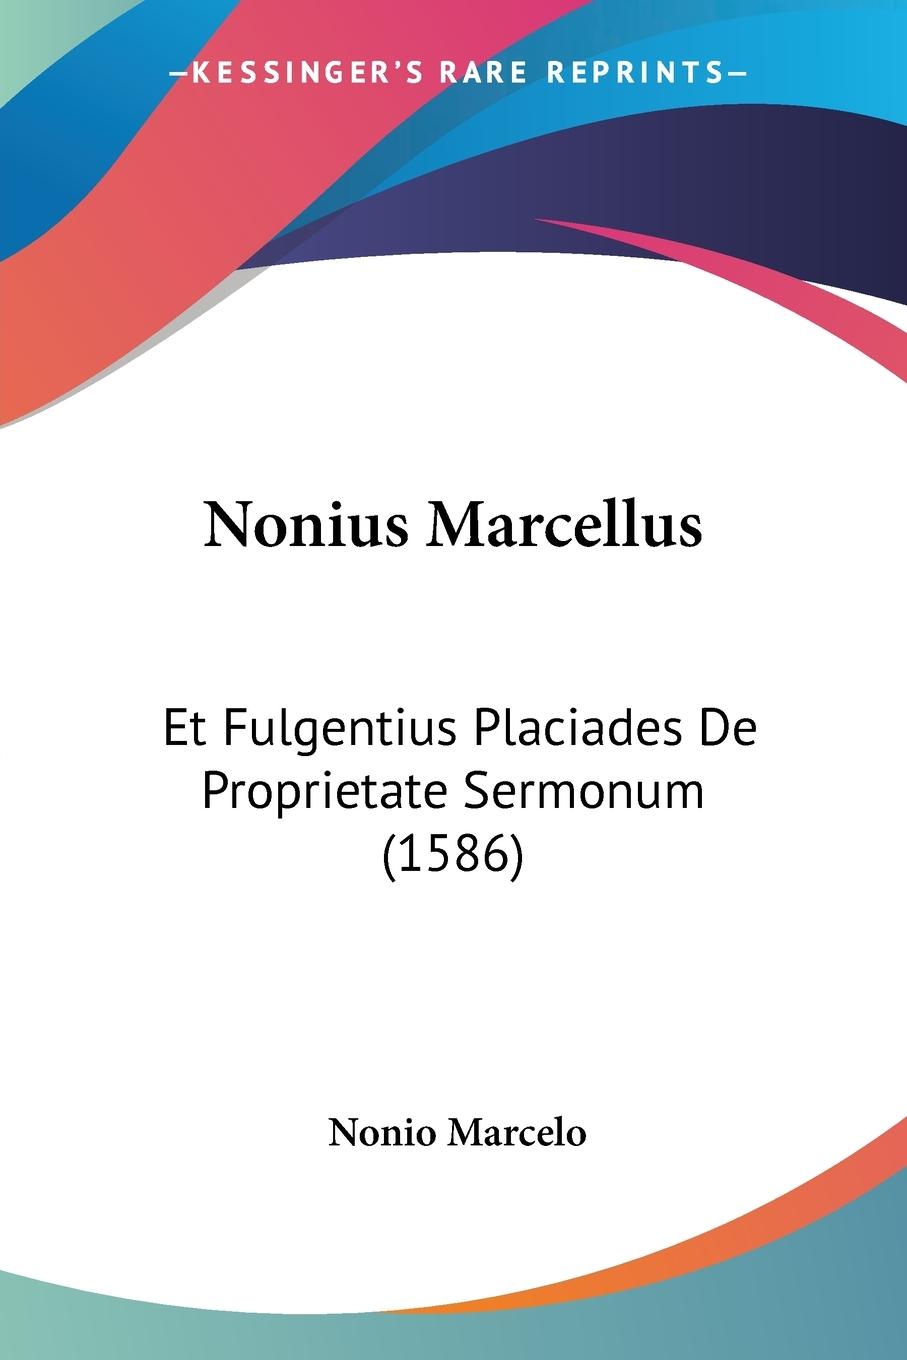 Nonius Marcellus - Marcelo, Nonio